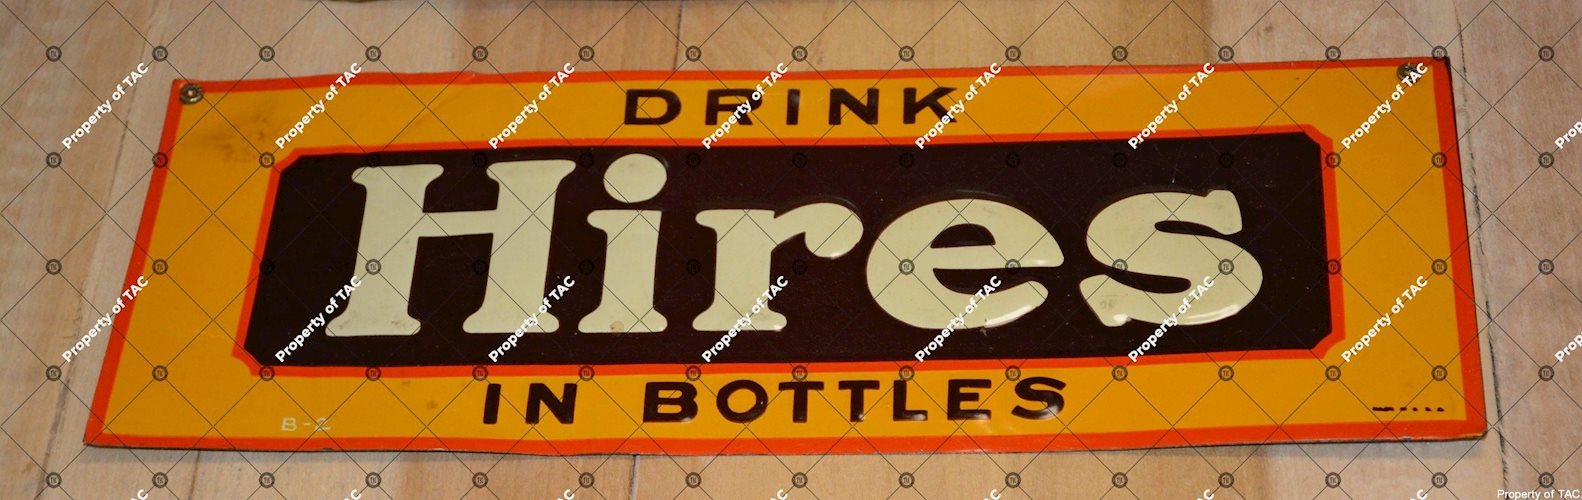 Drink Hires in Bottles sign